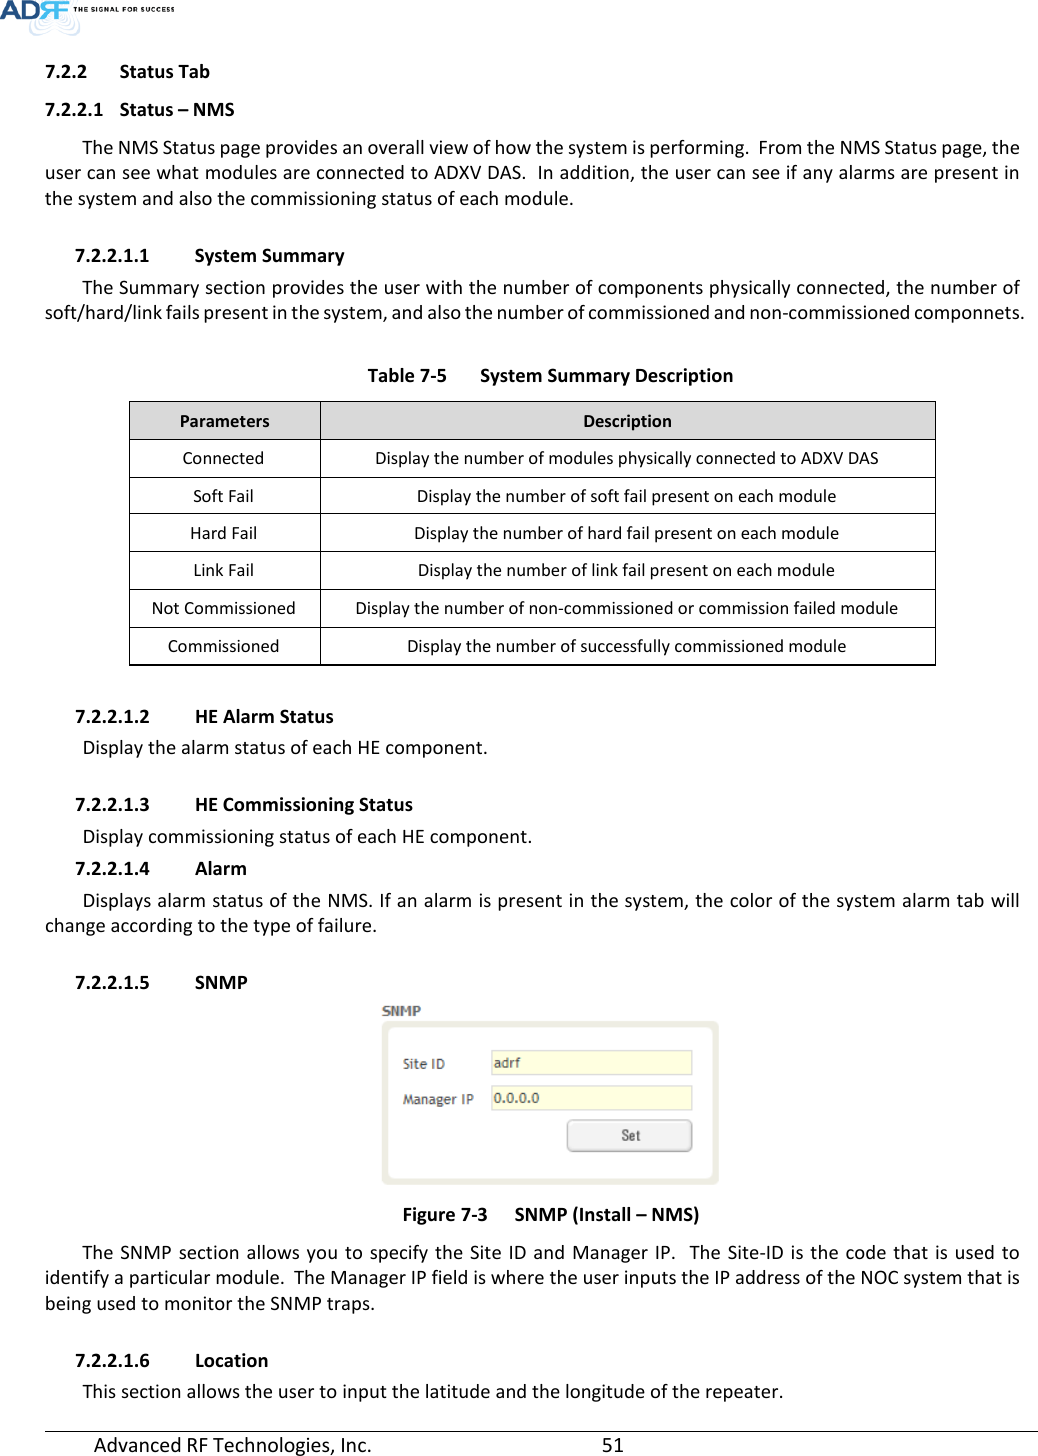 Page 51 of ADRF KOREA ADXV-R-25VUNA DAS (Distributed Antenna System) User Manual ADXV DAS